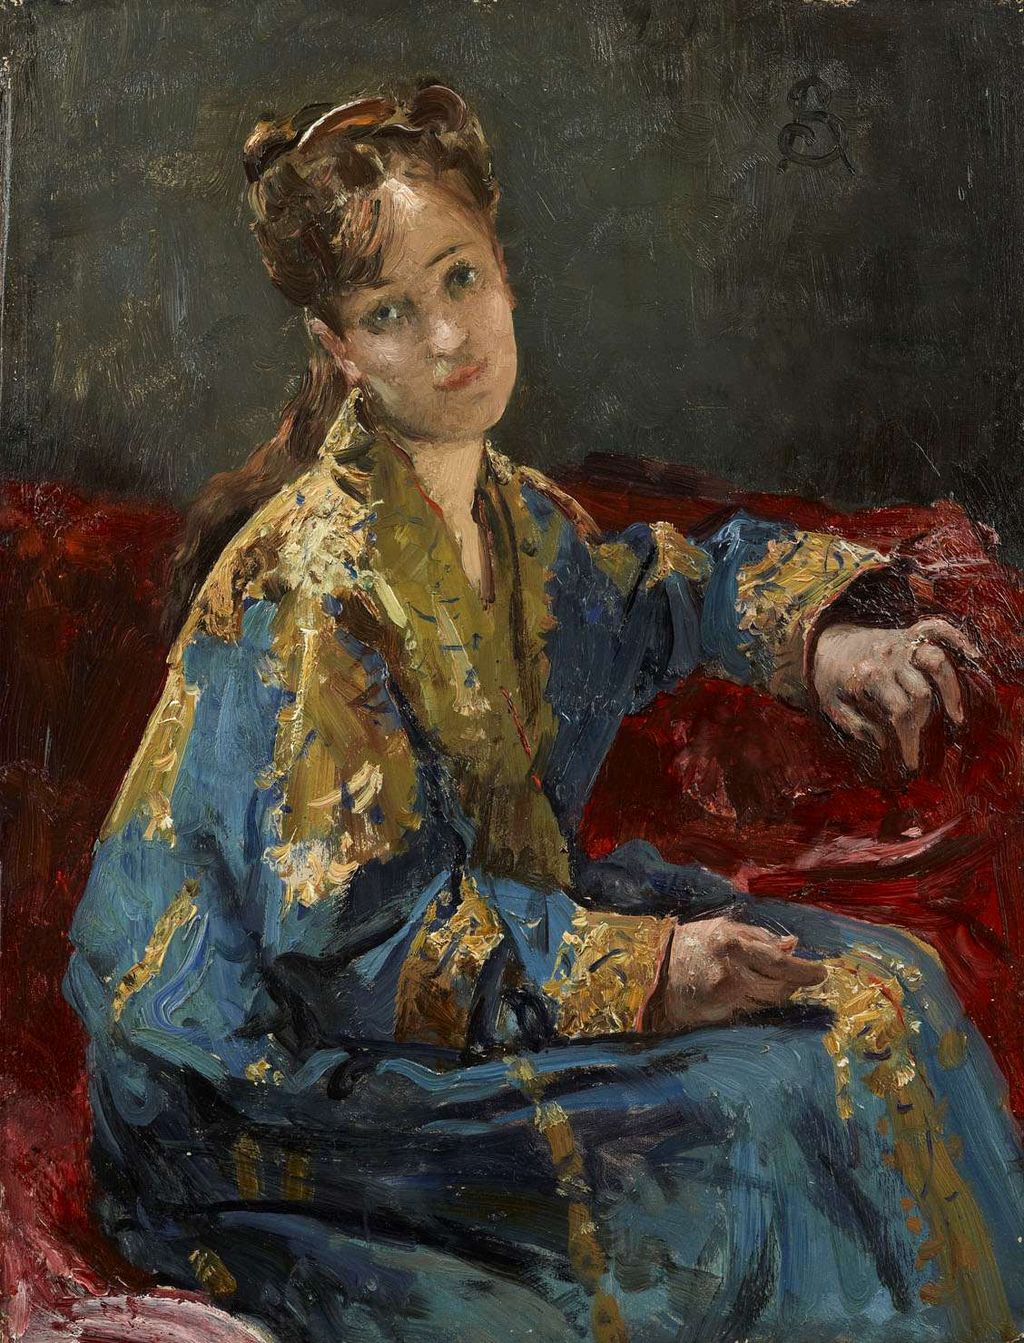 Jeune fille portant un kimono, ca. 1872, Alfred Stevens